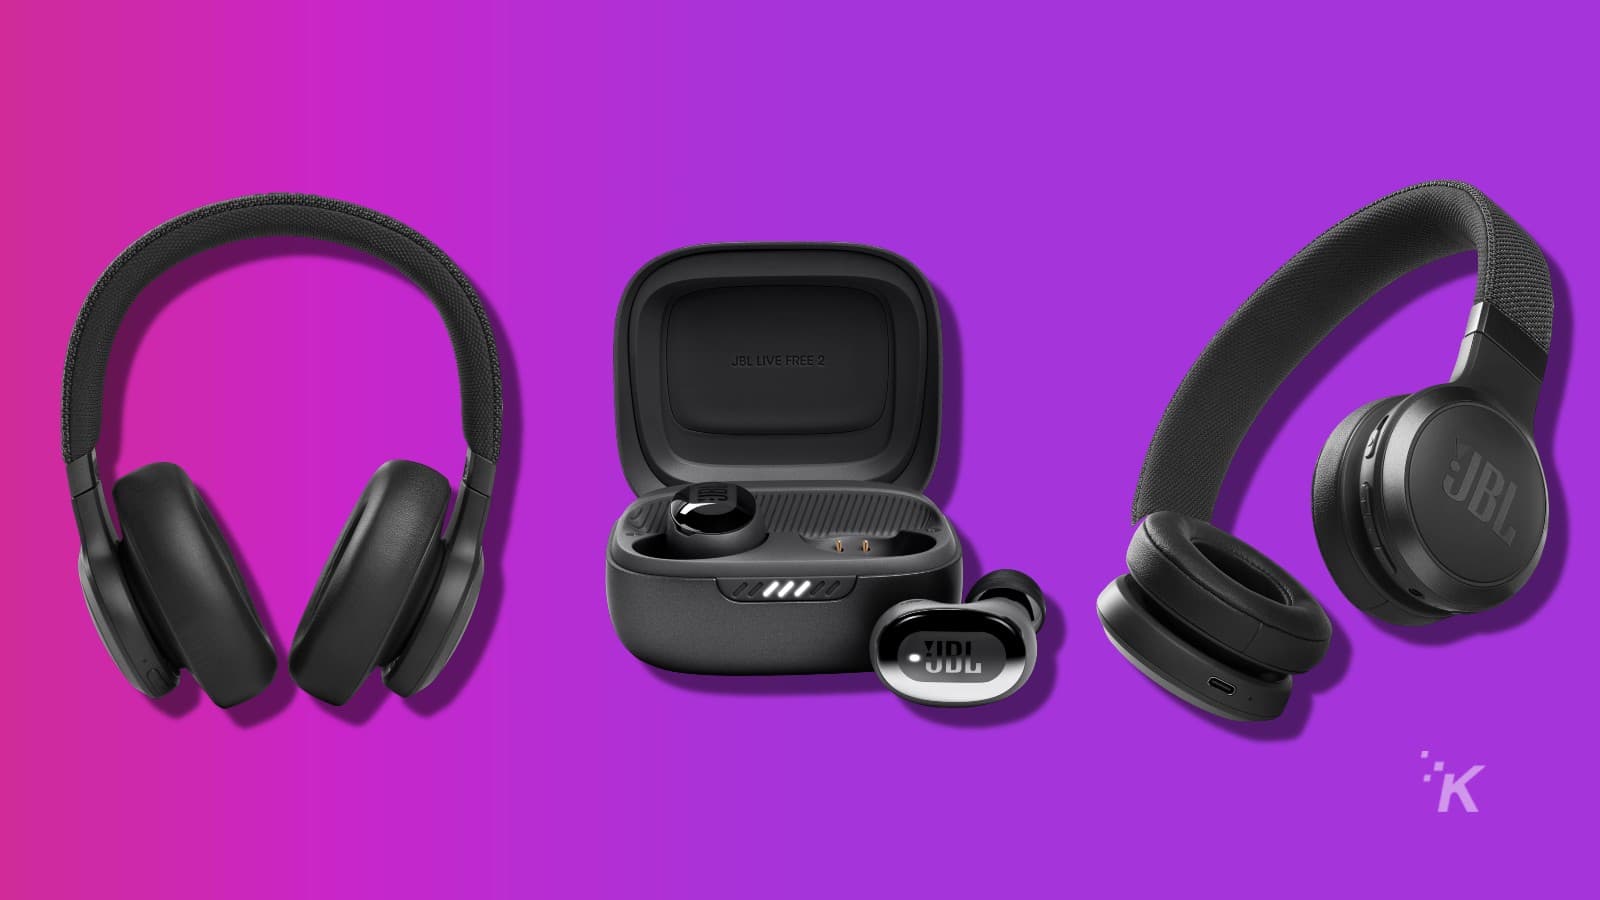 three kinds of jbl headphones on purple background